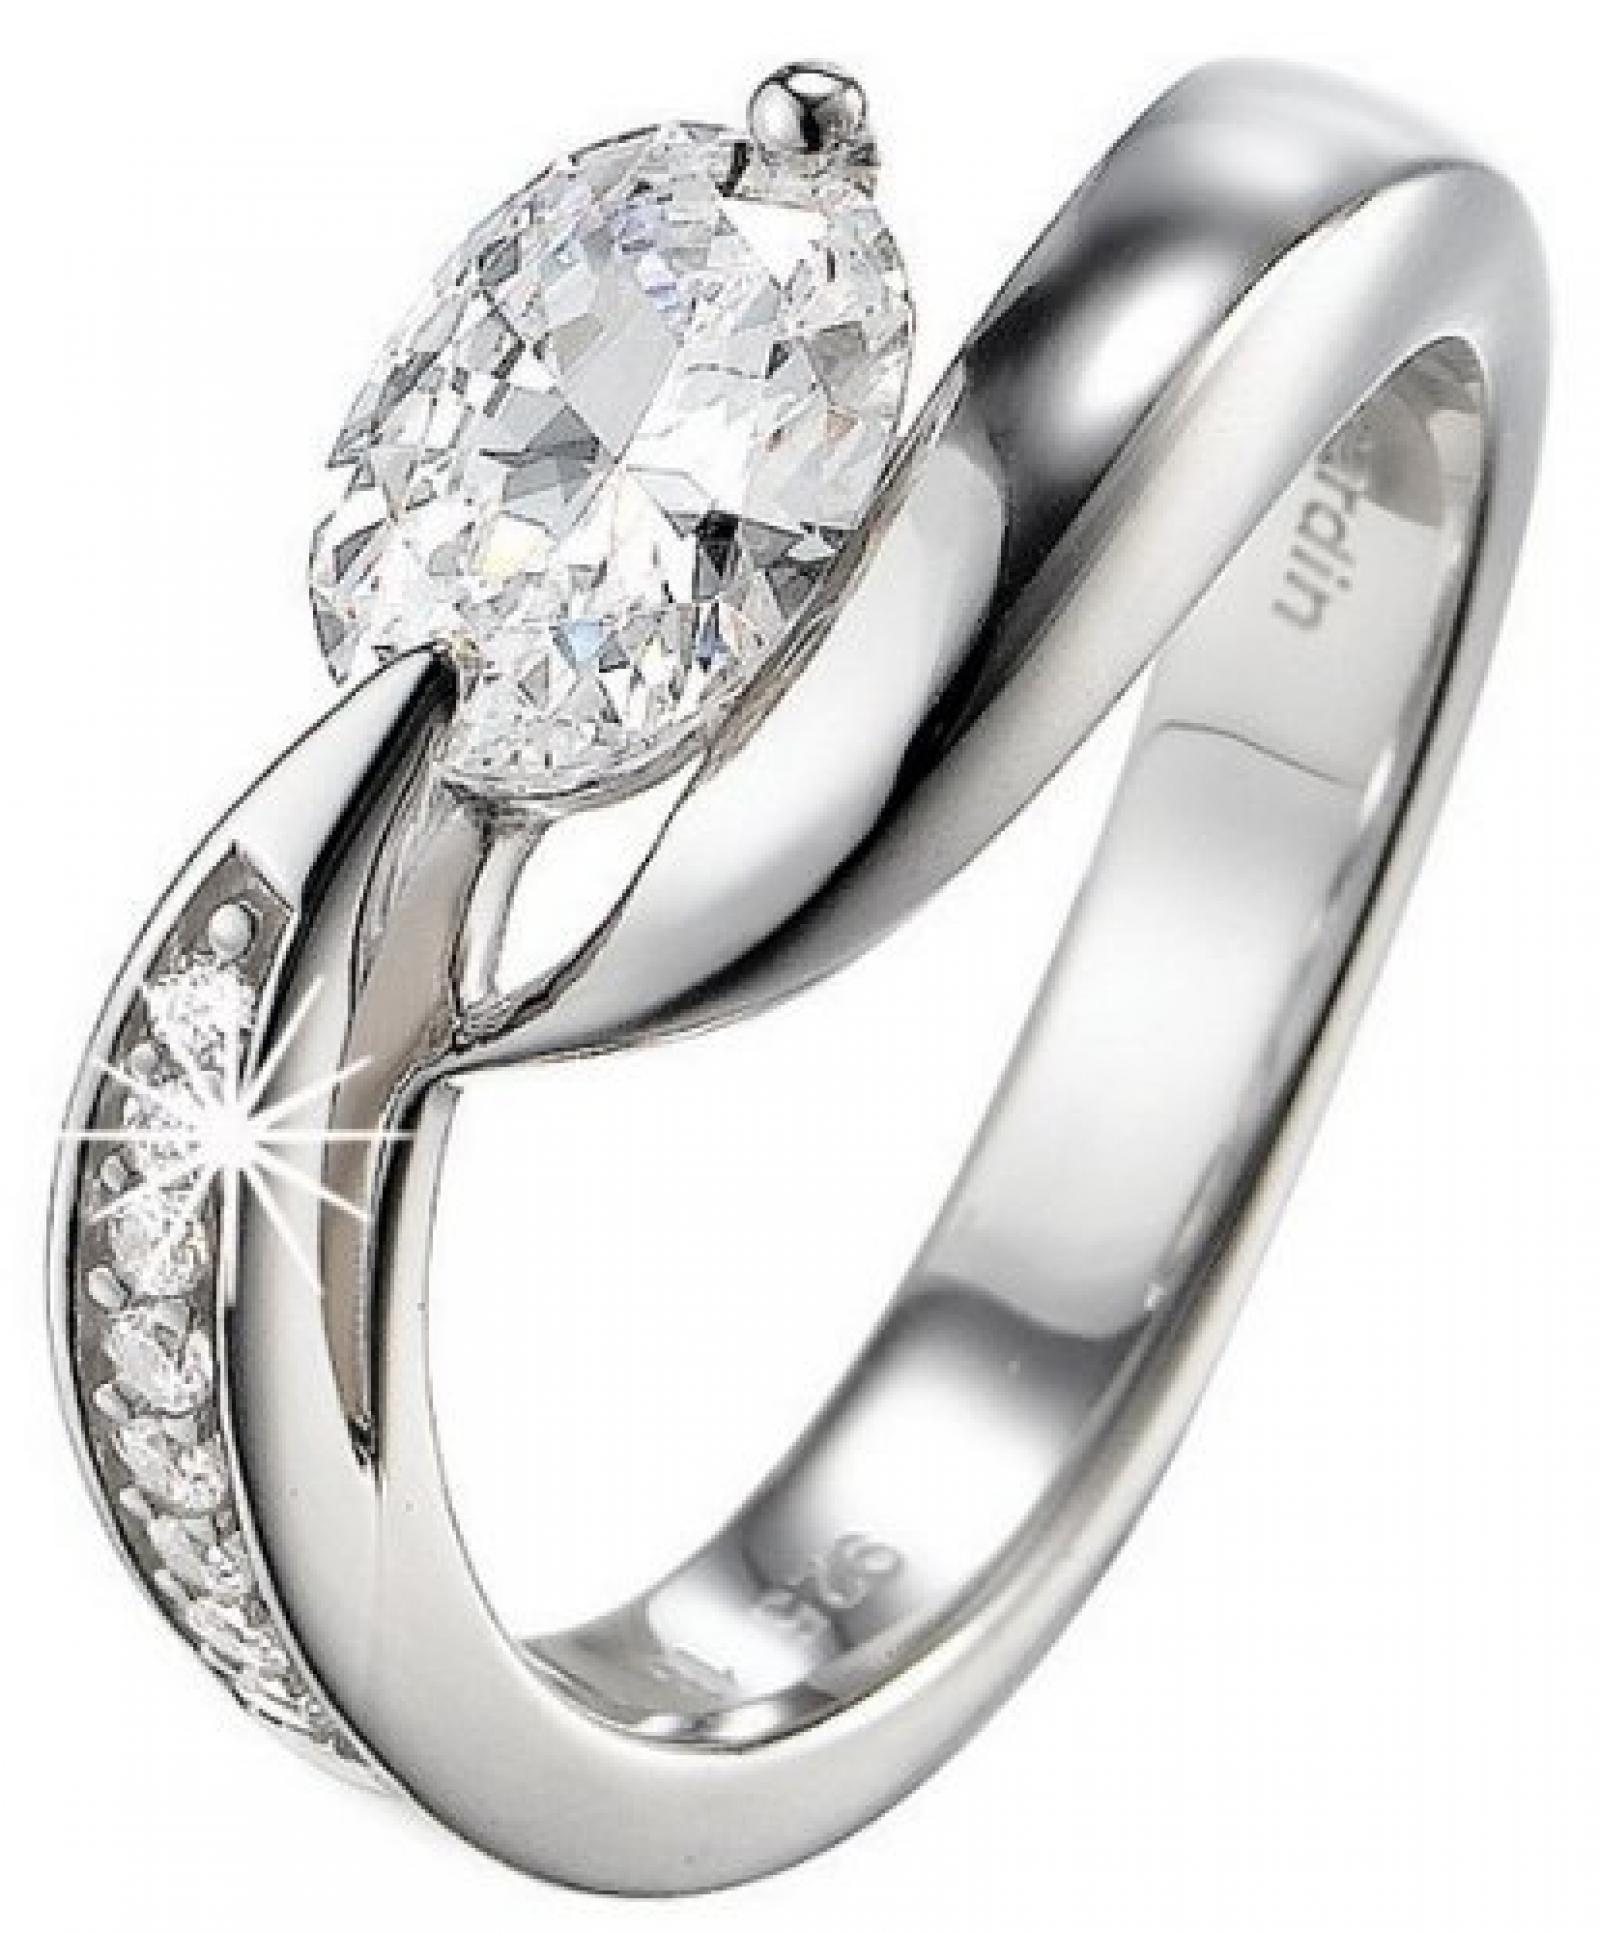 Pierre Cardin Damen-Ring 925 Sterling Silber rhodiniert Kristall Zirkonia Etoile filante weiß Gr.53 (16.9) PCRG90307A170 